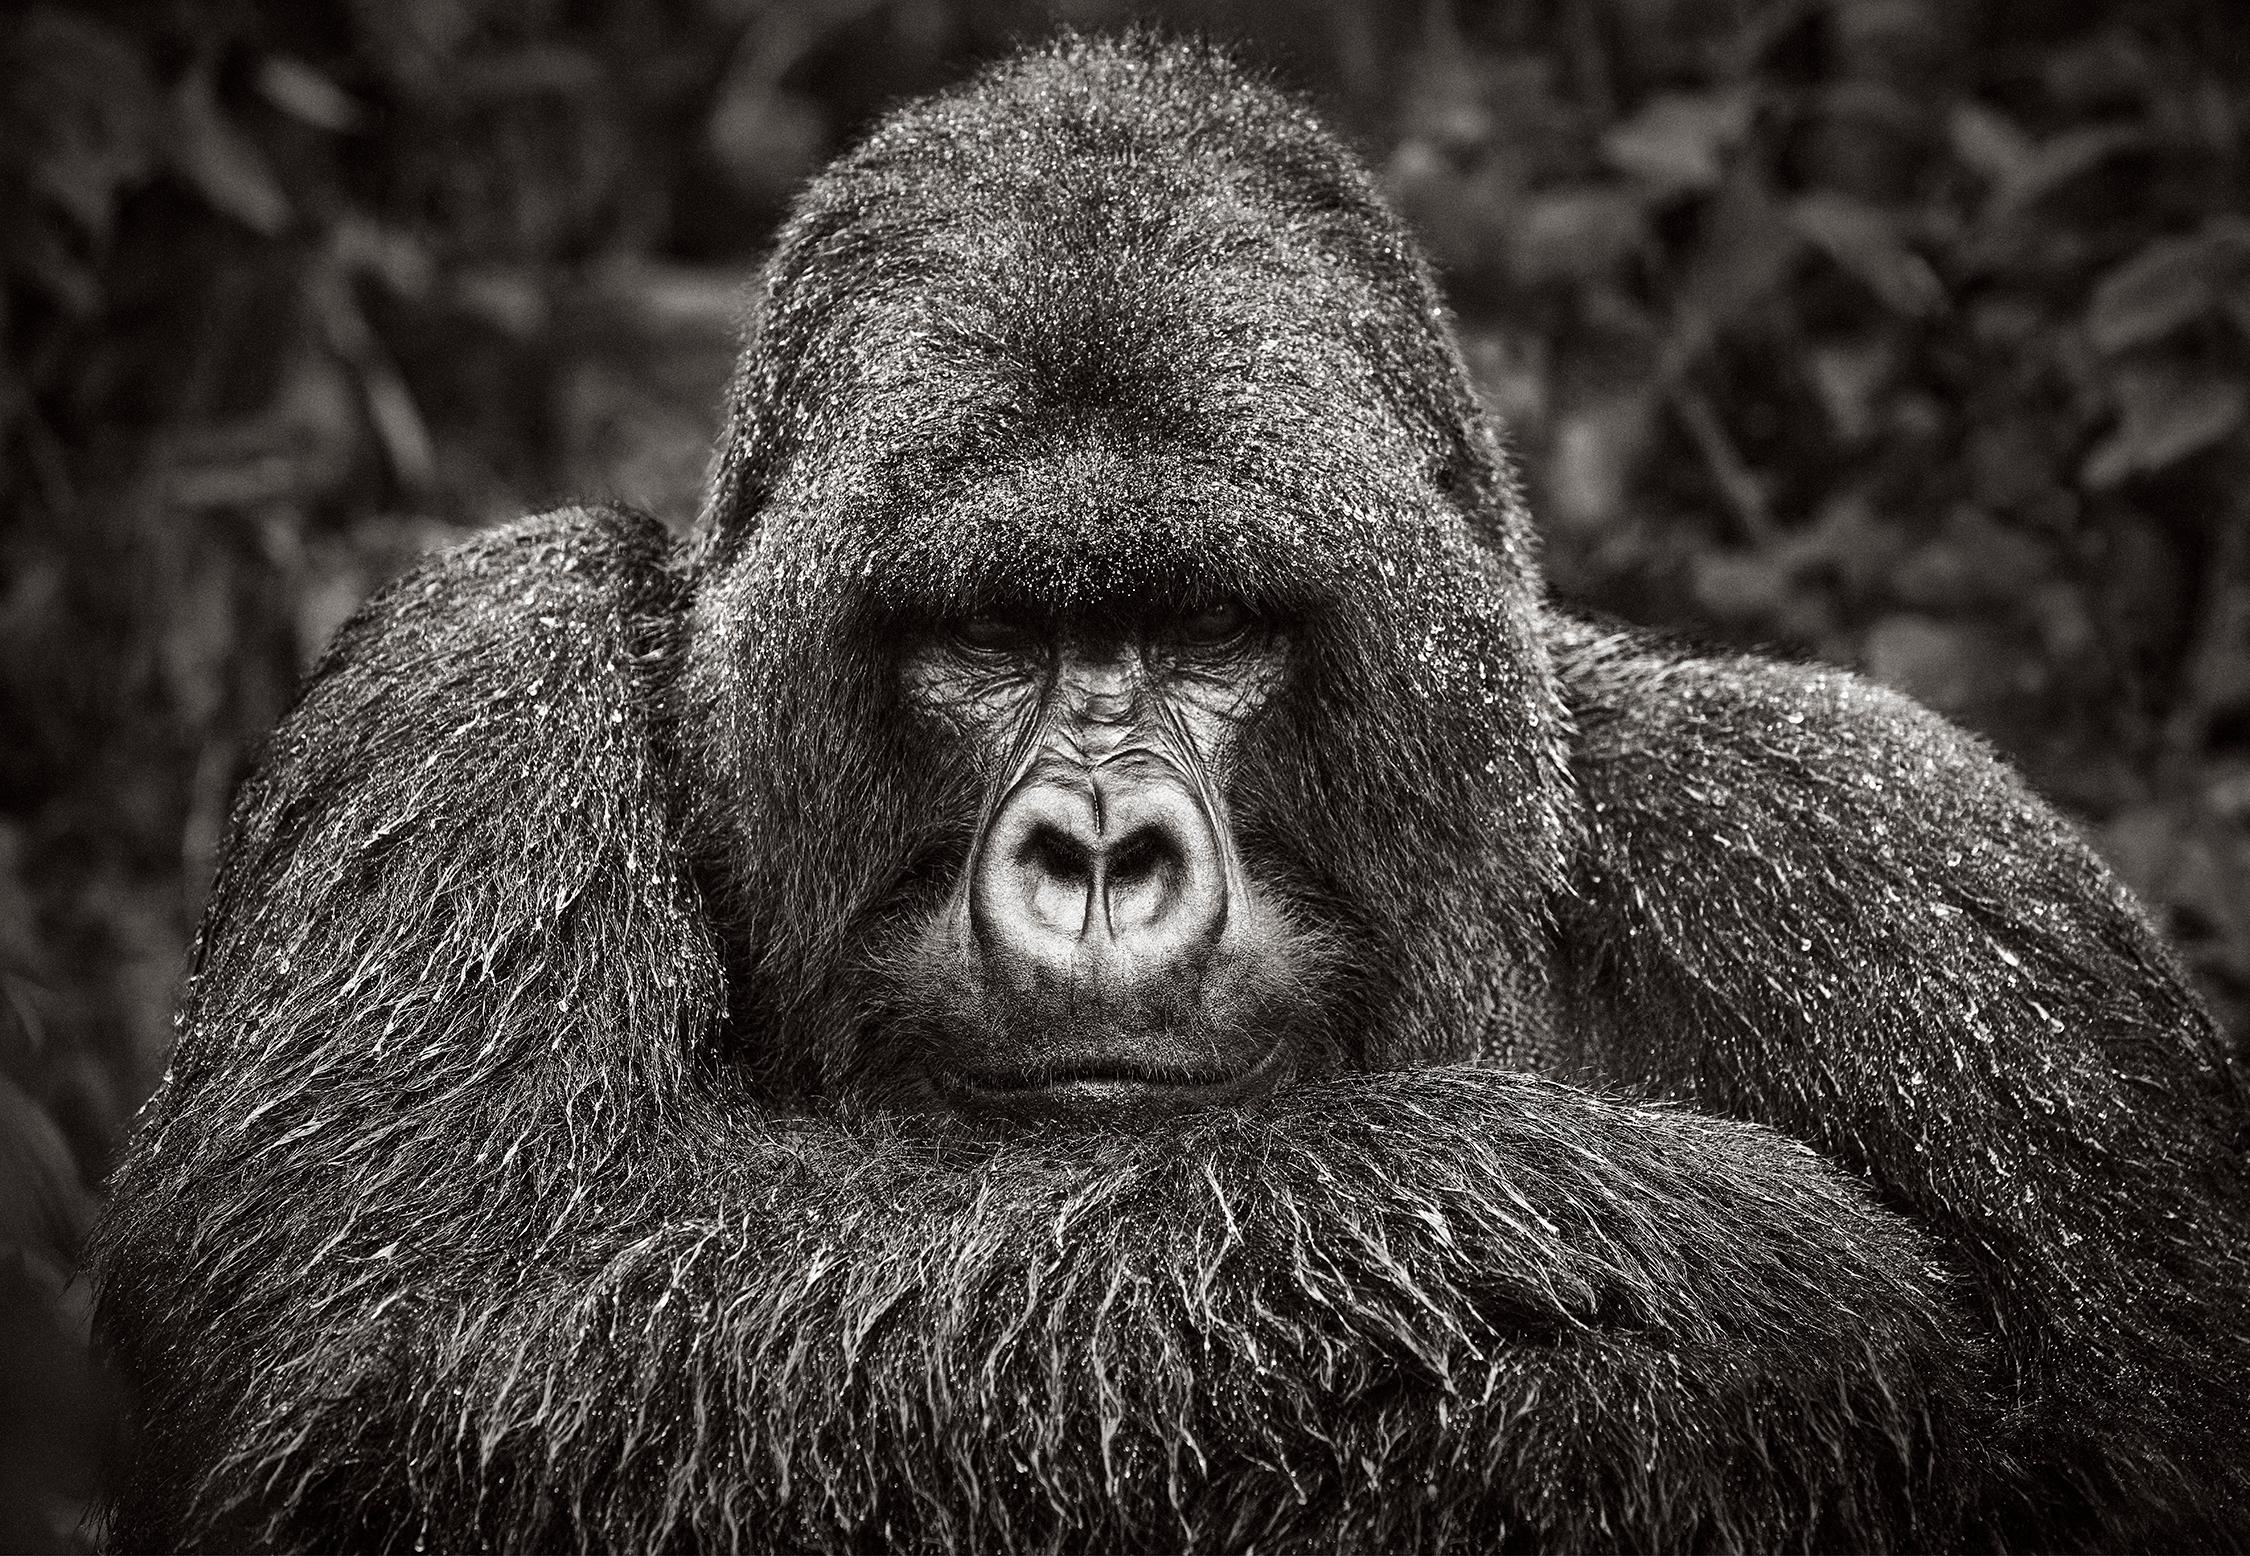 Drew Doggett Black and White Photograph – Intime Porträt einer Berggorille, Schwarz-Weiß-Fotografie, ikonisch 